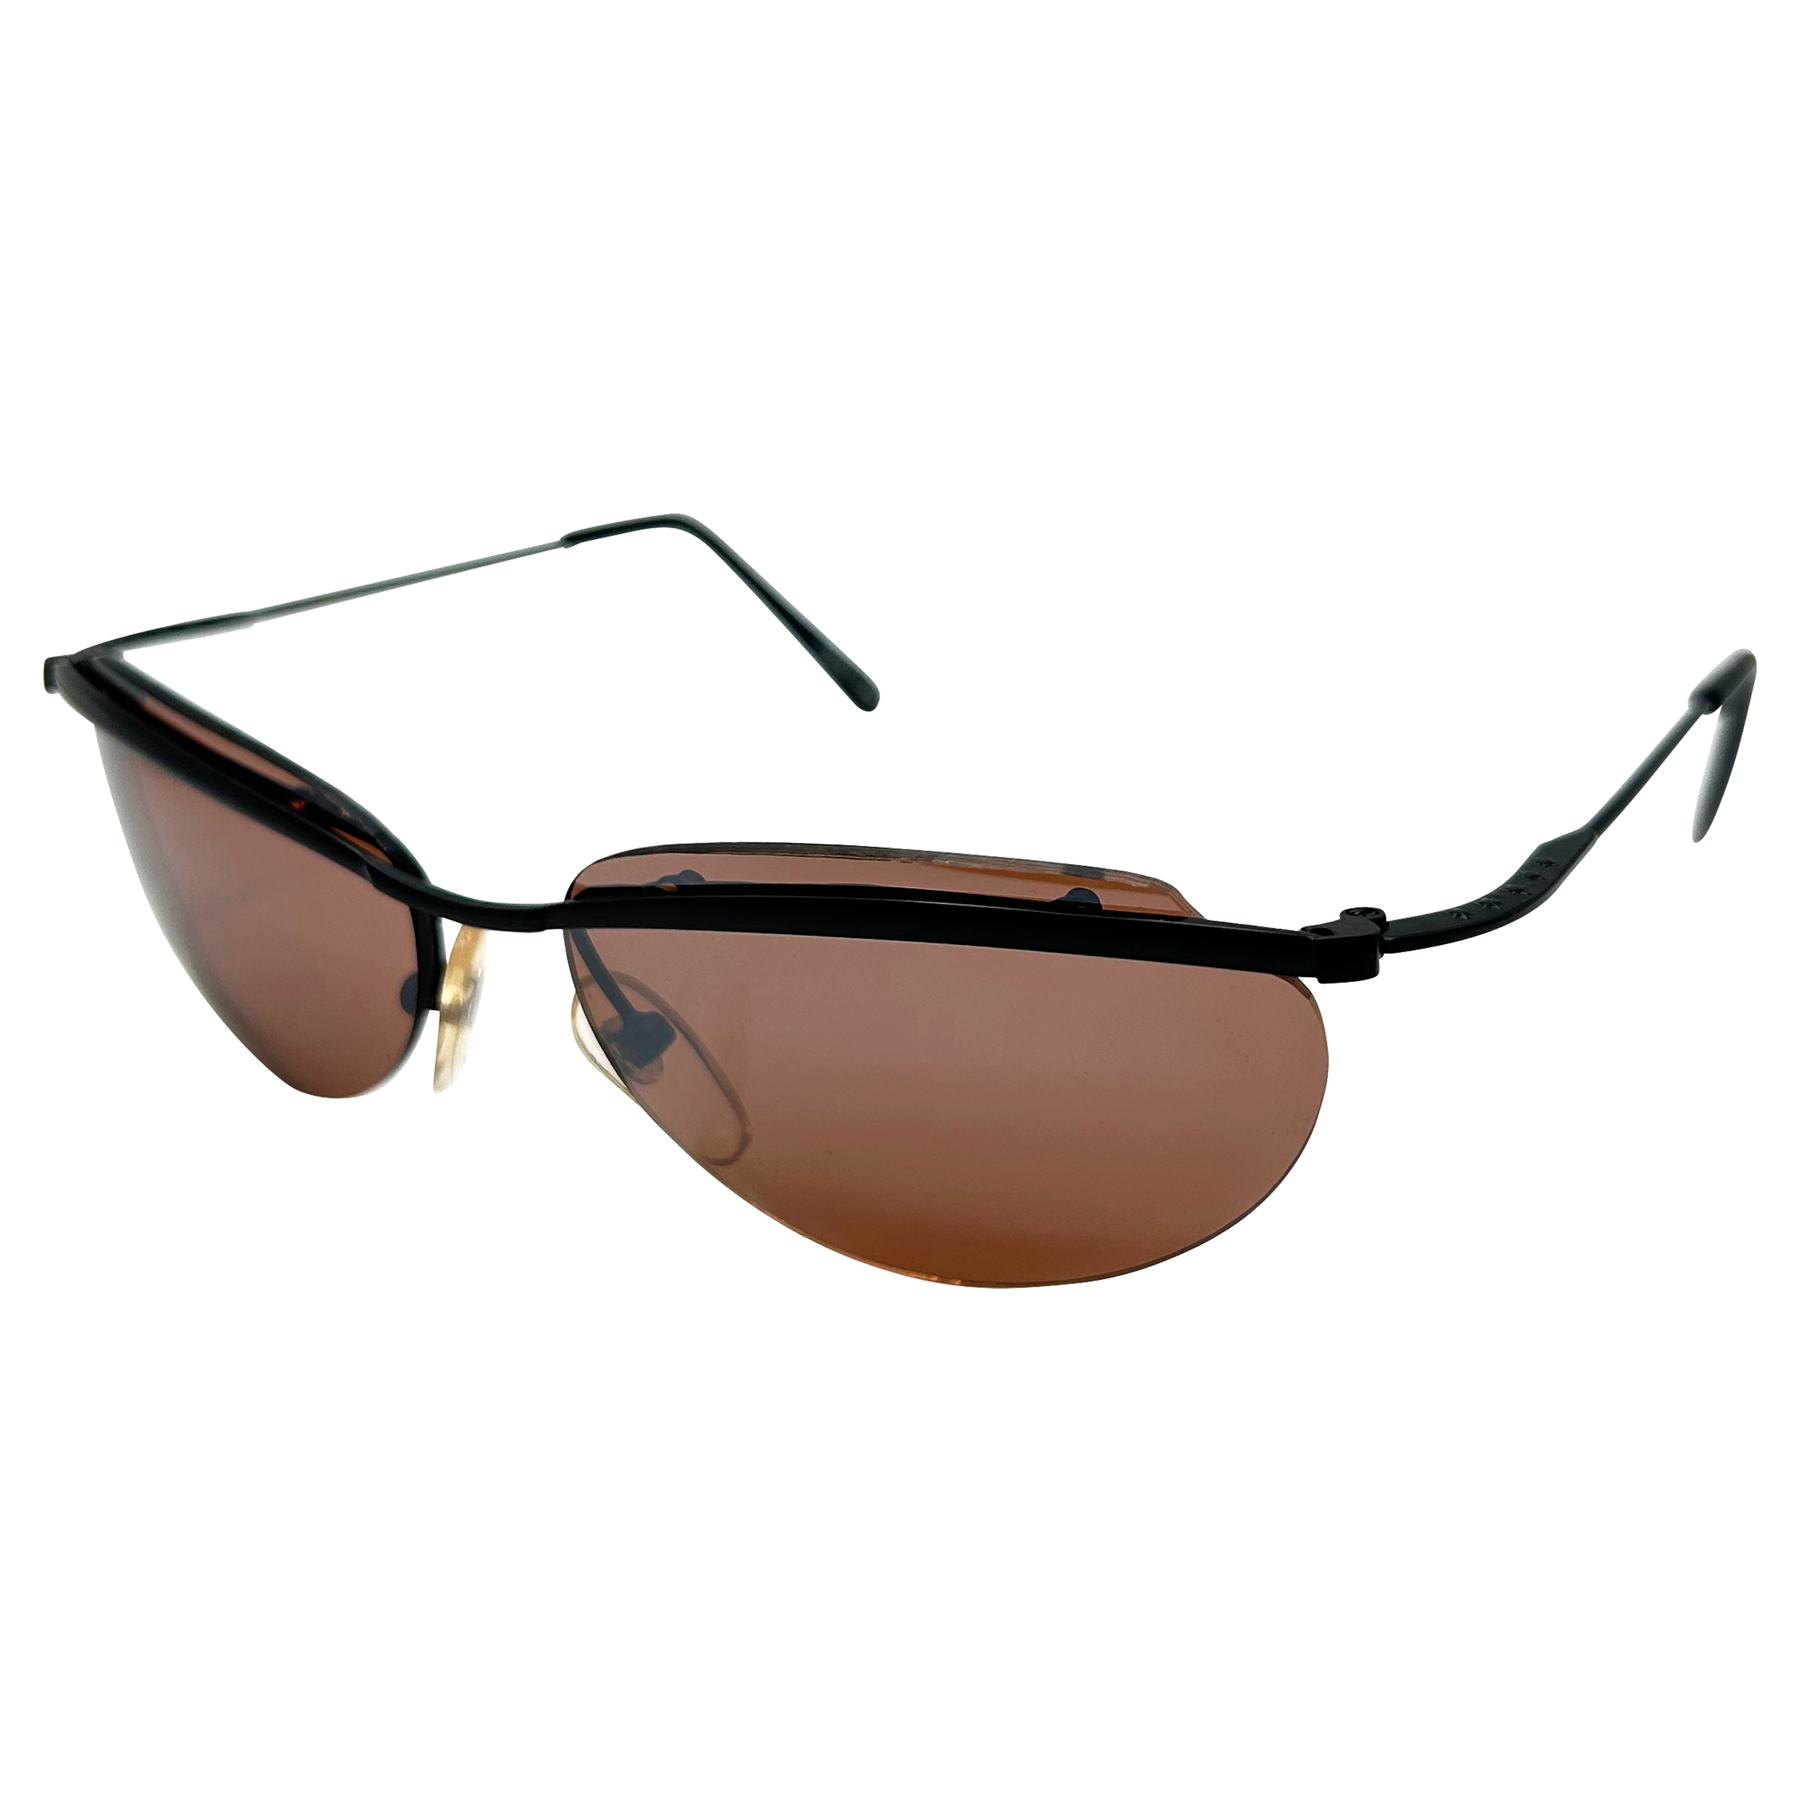 BLIND SPOT 90s Sunglasses | Blue-Blocker | Day Driving